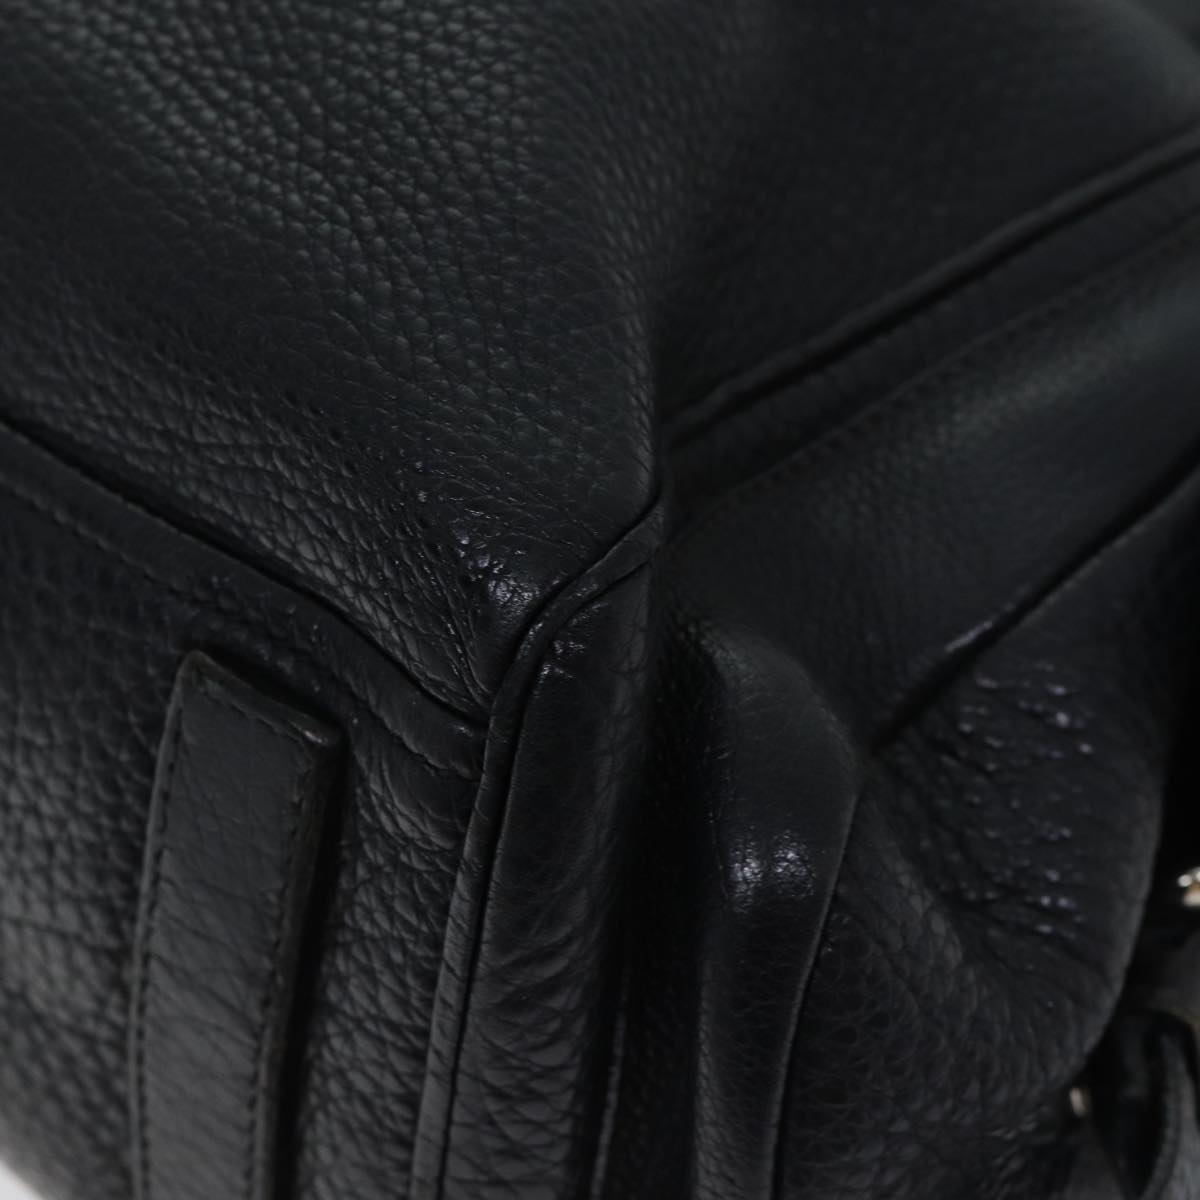 PRADA Tote Bag Leather Black Auth 70408